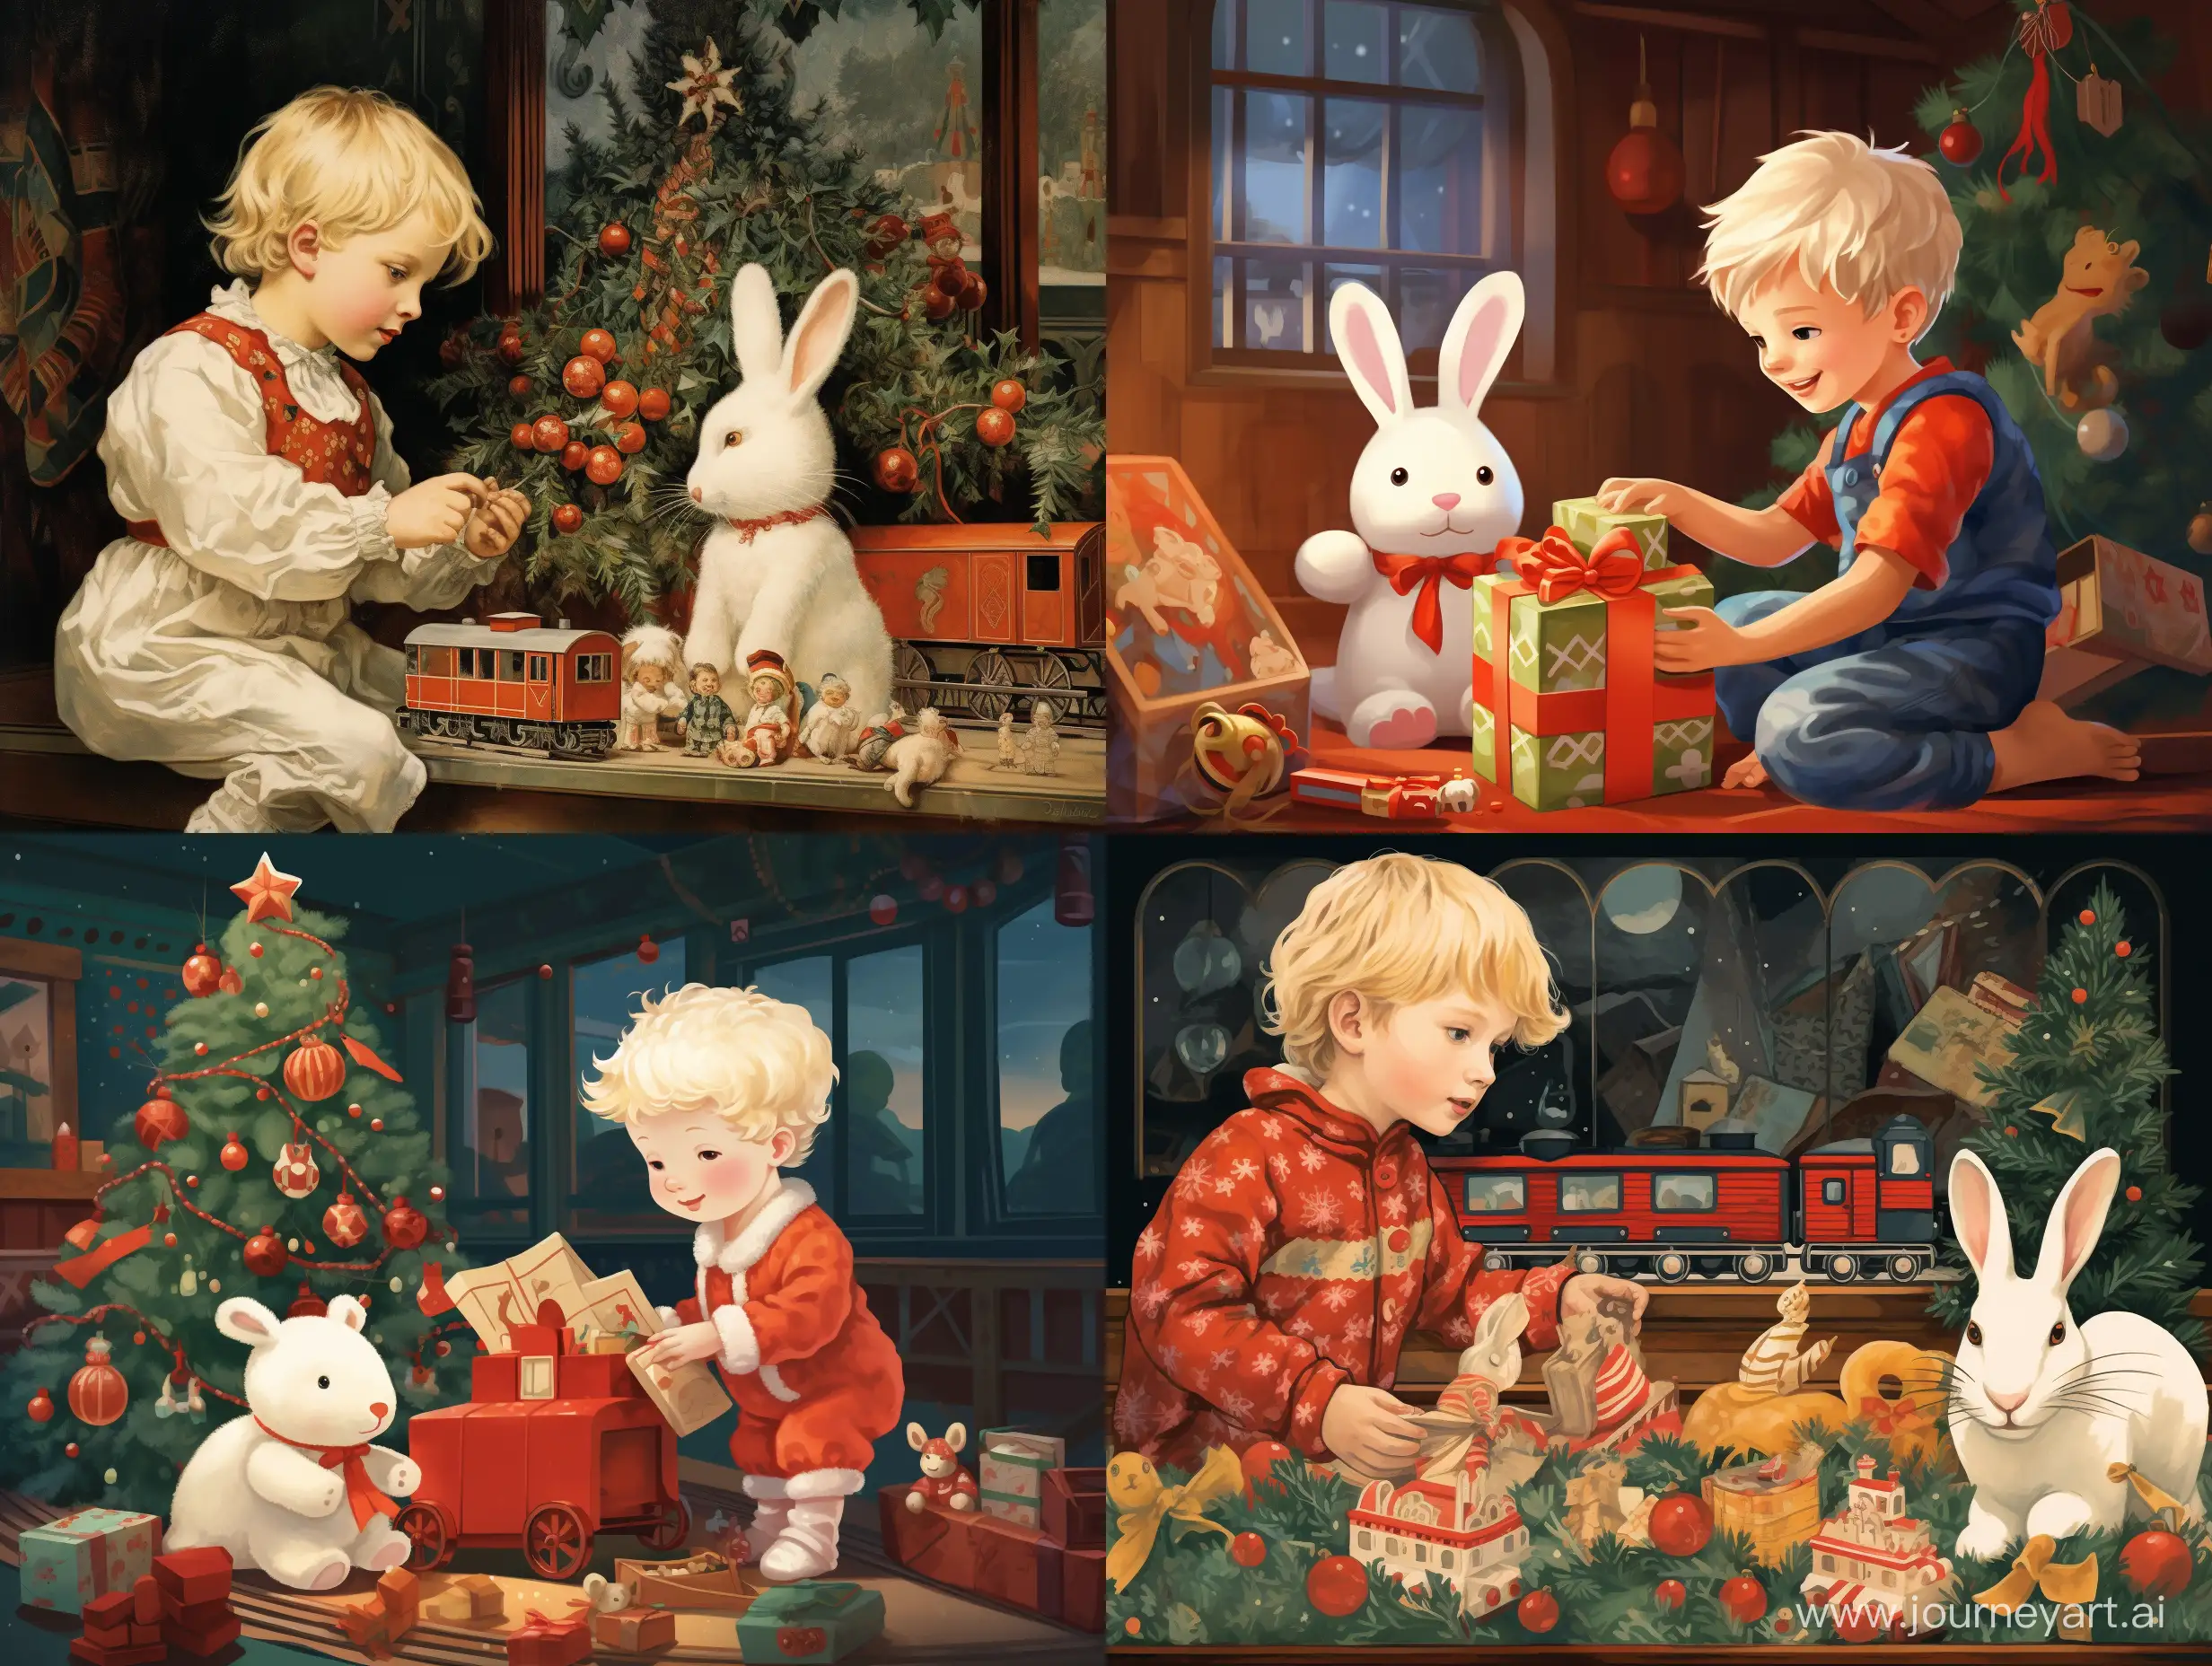 Санта Клаус кладет под ёлочку паровозик а рядом стоит Светловолосый мальчик в пижаме зайчика